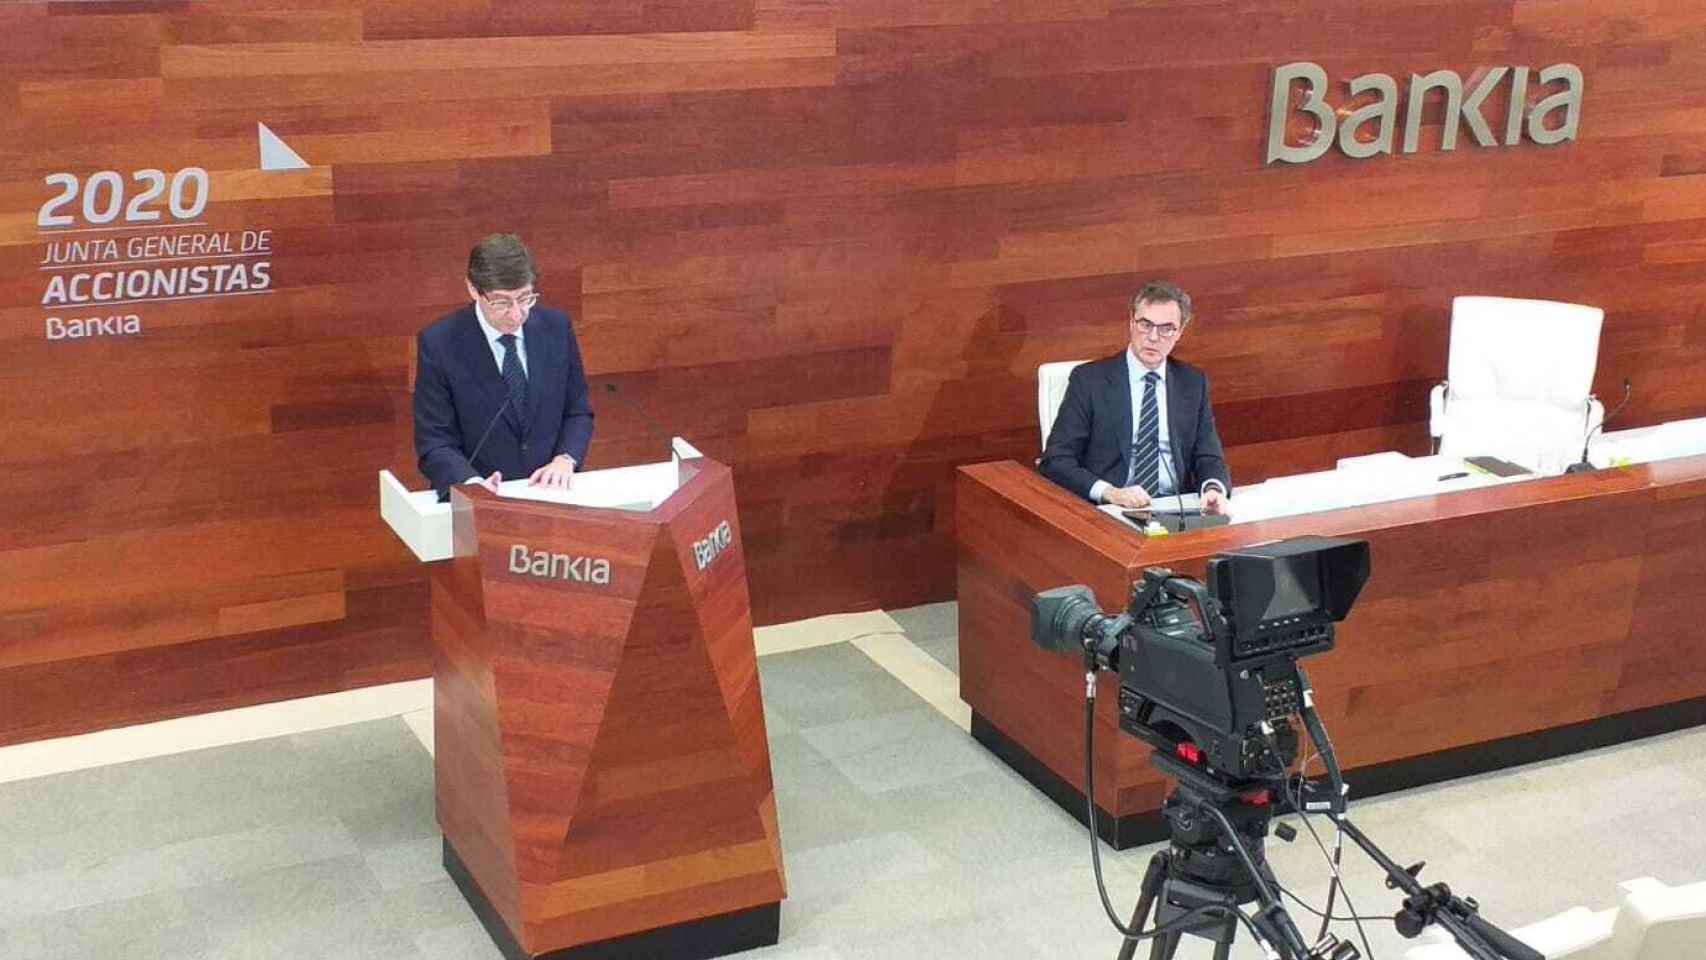 Junta de accionistas 2020 de Bankia.